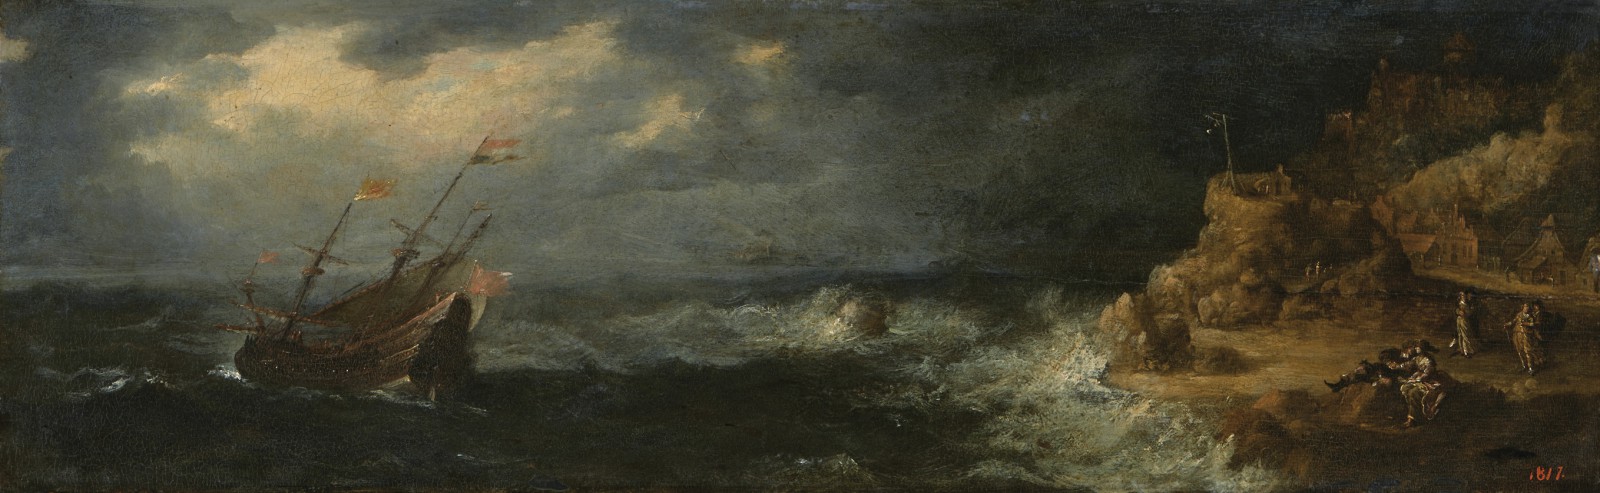 Obraz łazienkowski przedstawia płynący pod holenderską banderą trójmasztowy statek, który wychodząc w morze, walczy z burzą. Jego zmagania obserwują z brzegu trzy pary kochanków.